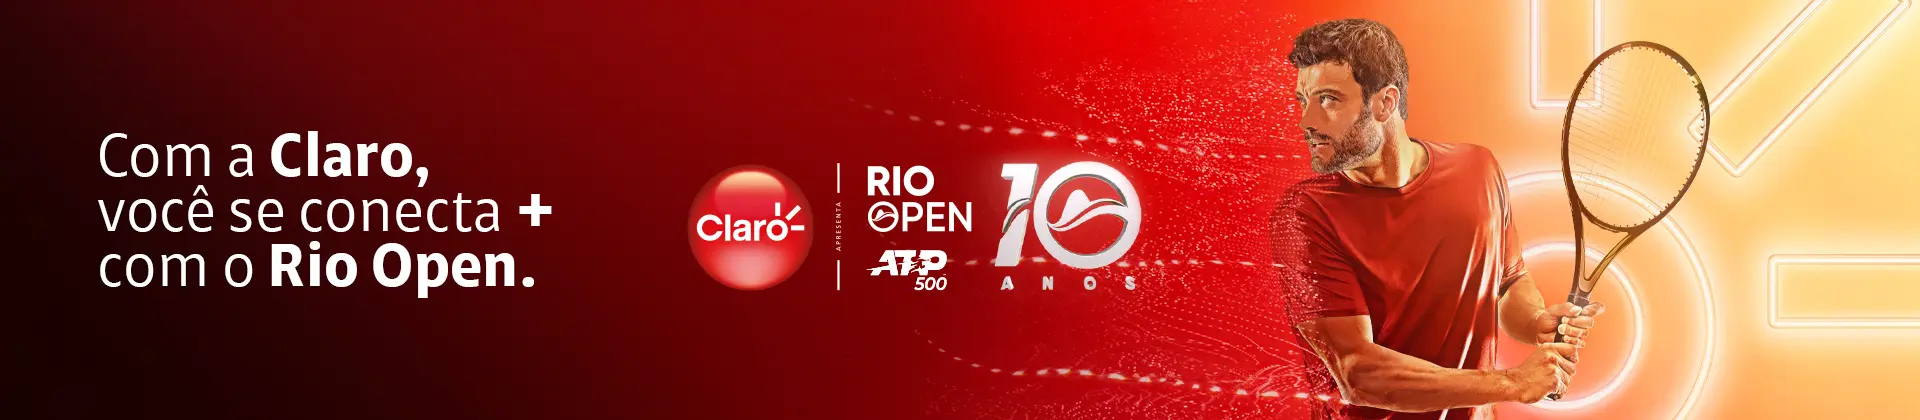 Com a Claro, você se conecta + com o Rio Open.